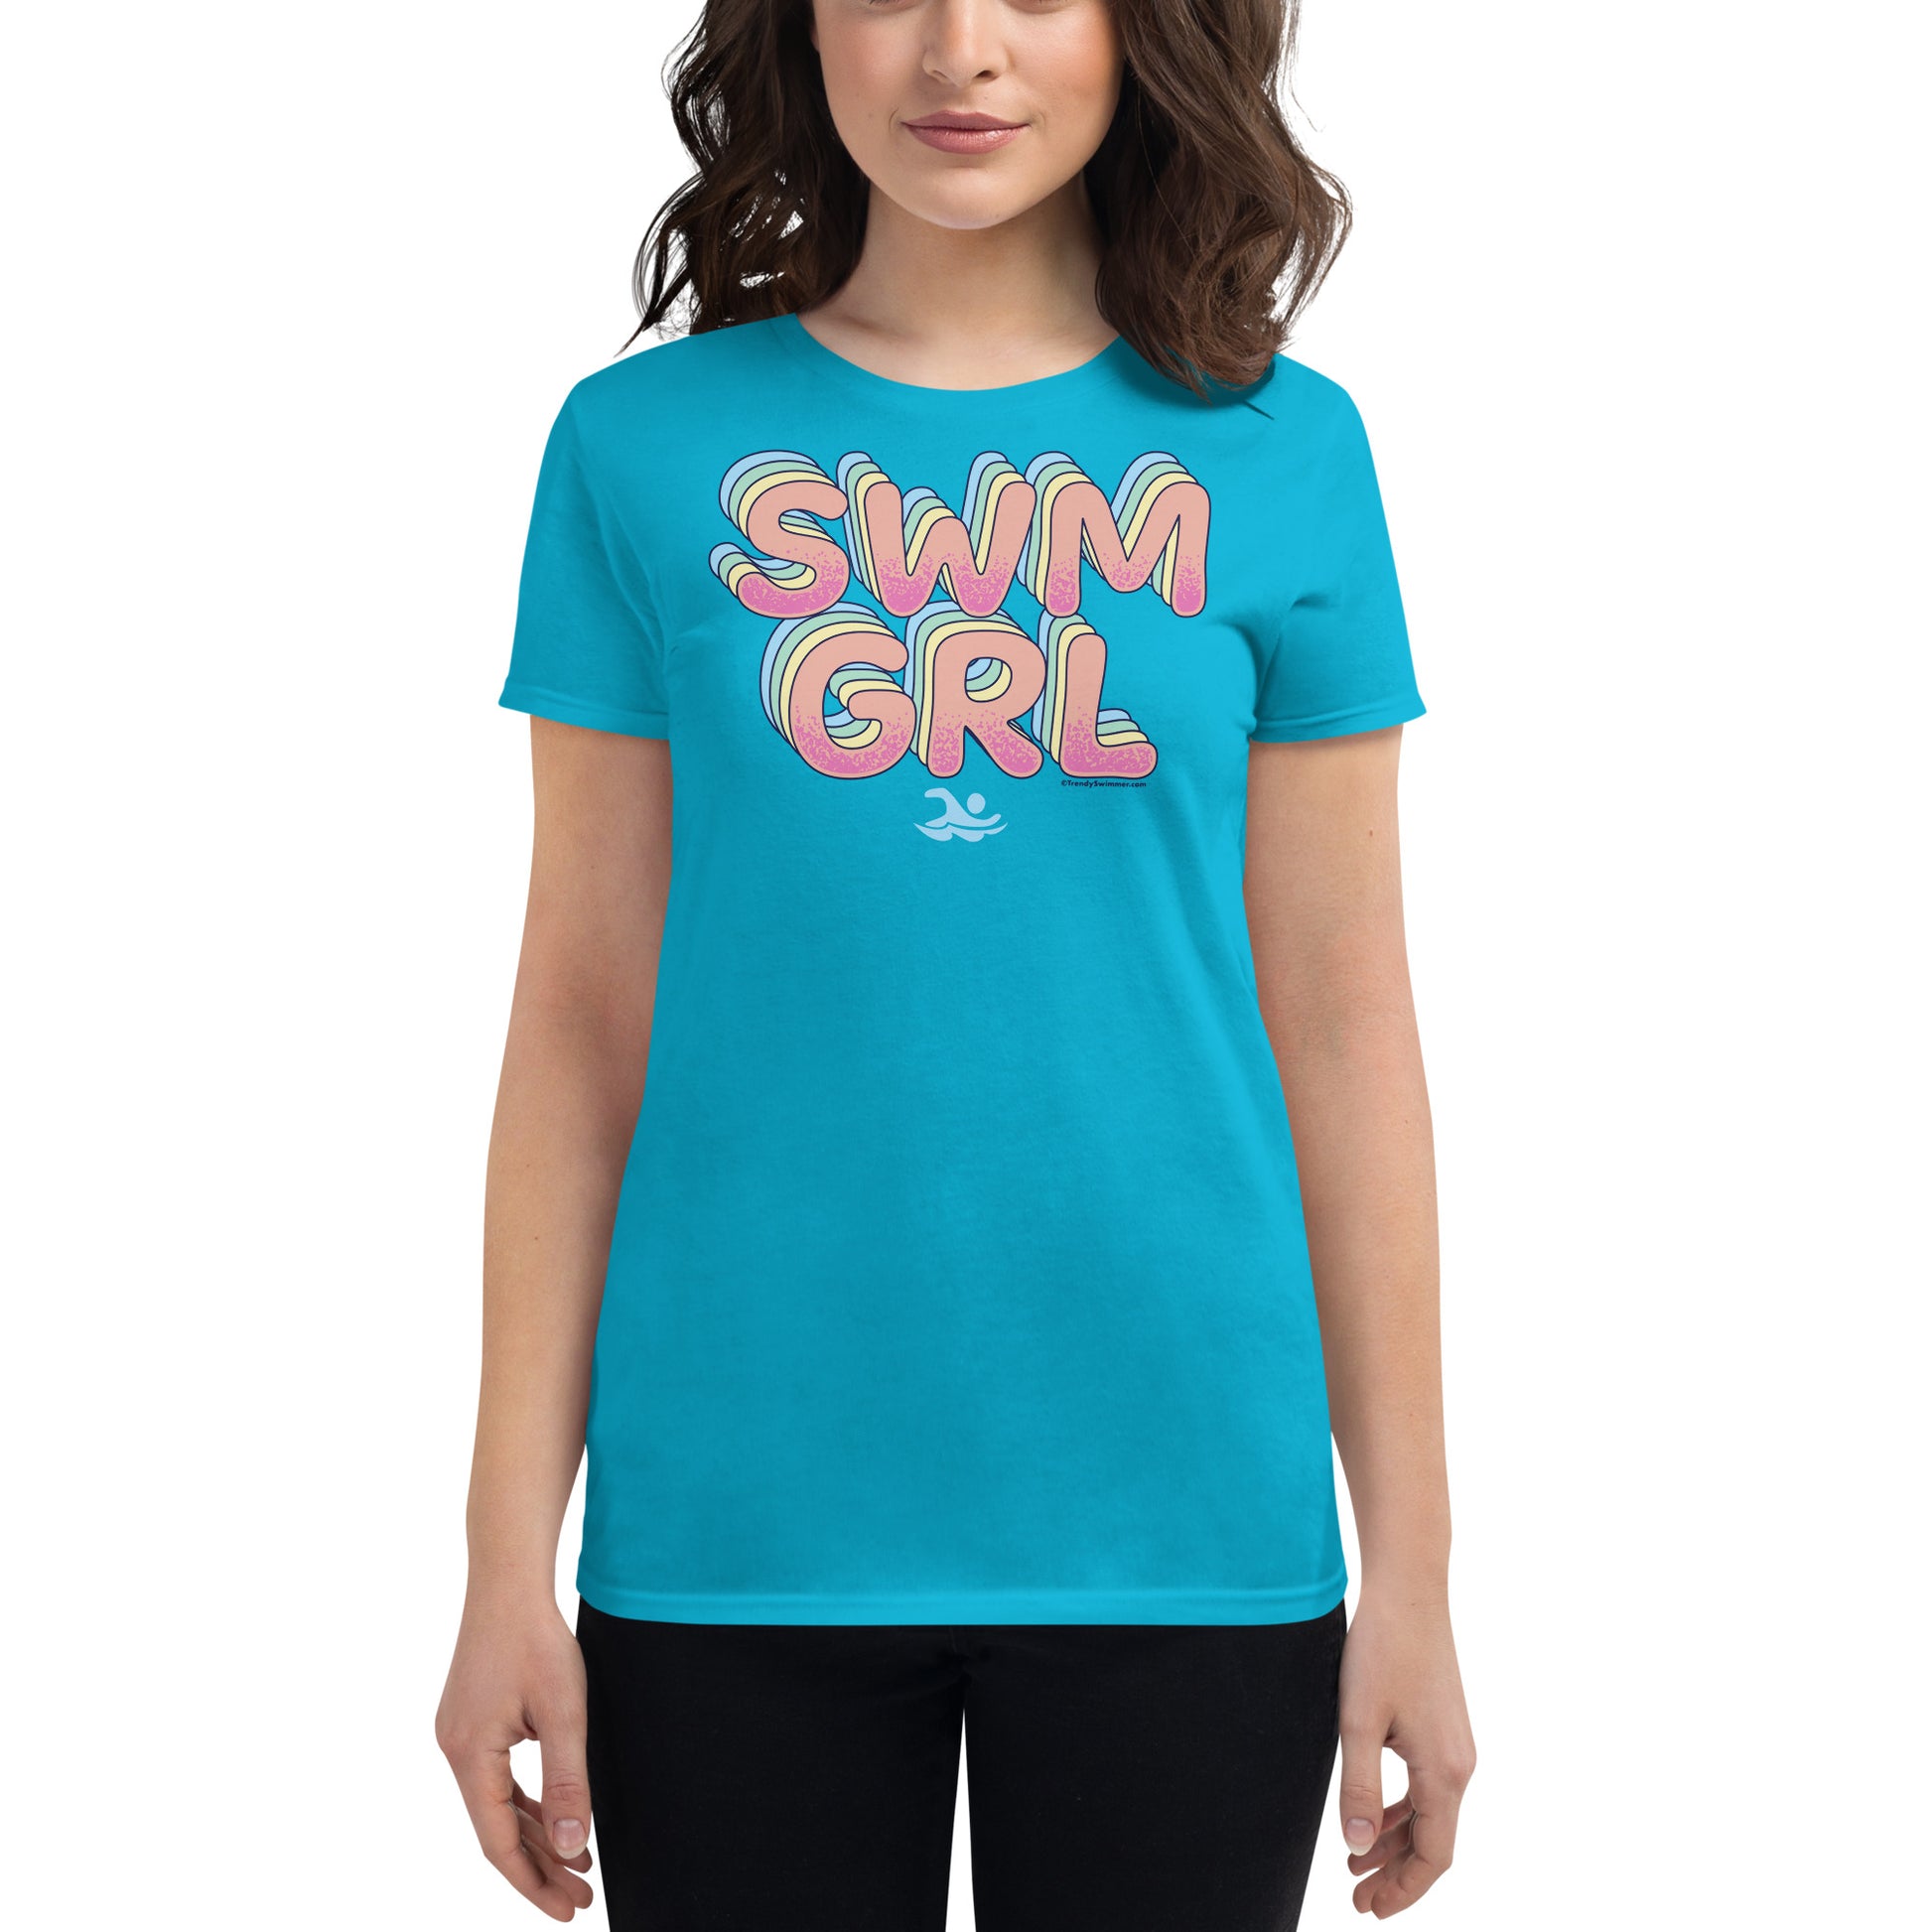 SWM GRL Swim Girl Women's Short Sleeve T Shirt - TrendySwimmer